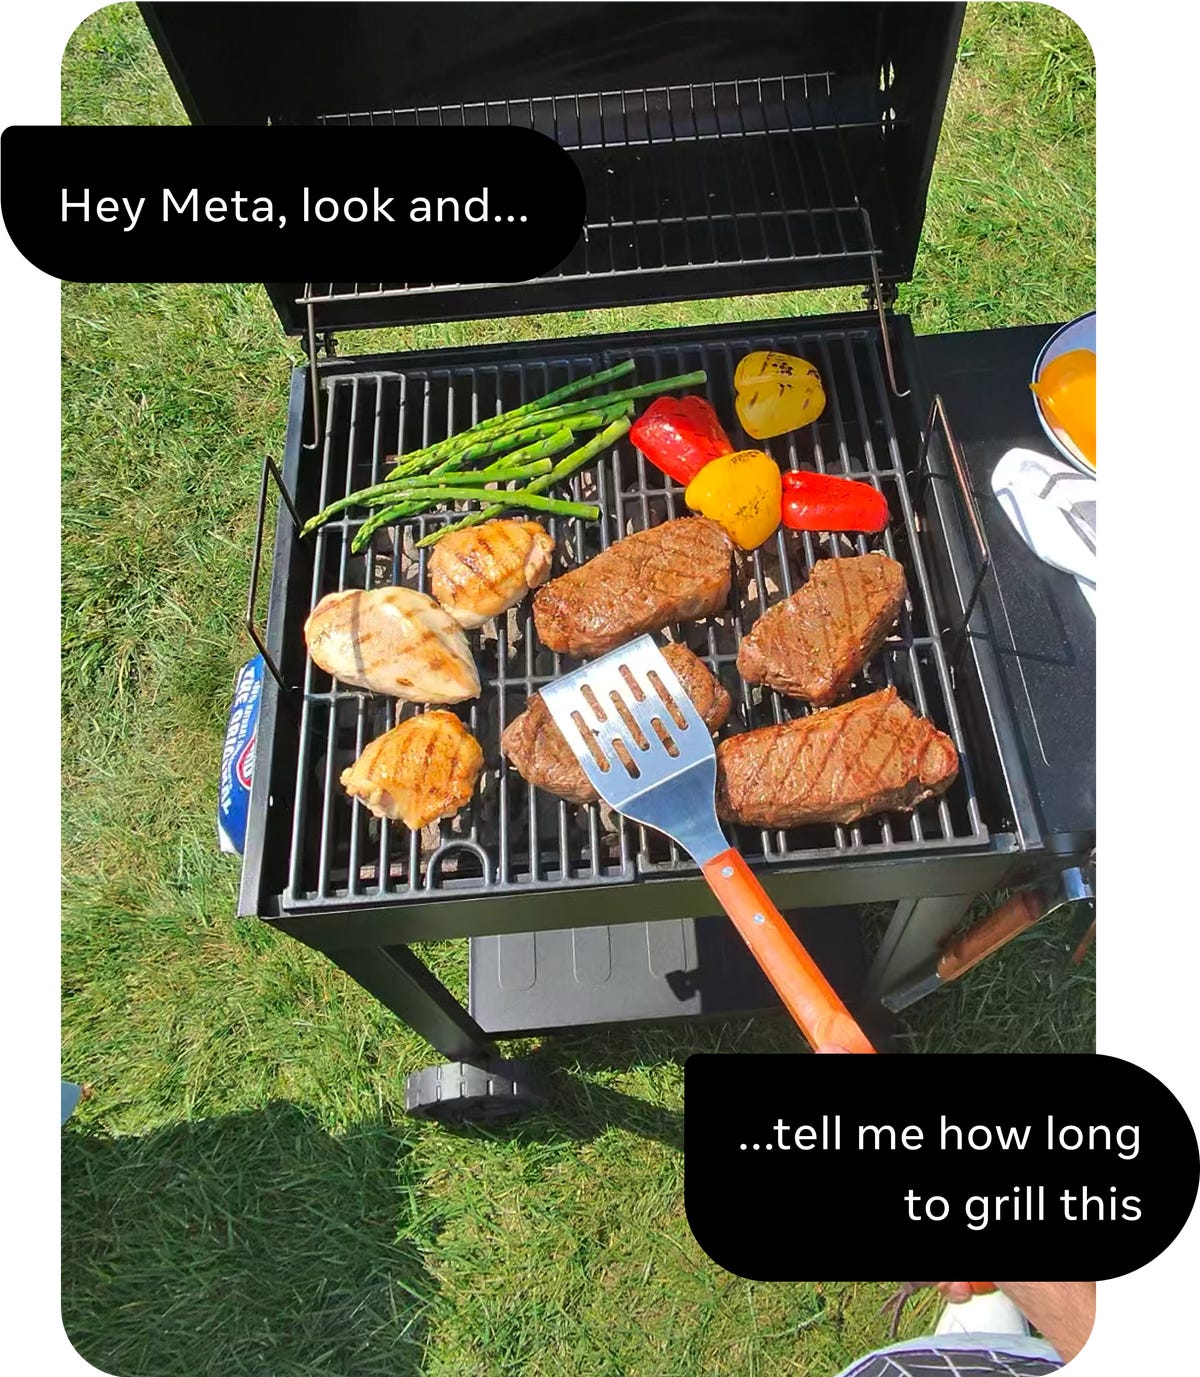 Uma foto de churrasco, com legendas pedindo ajuda a um assistente de IA para cozinhar